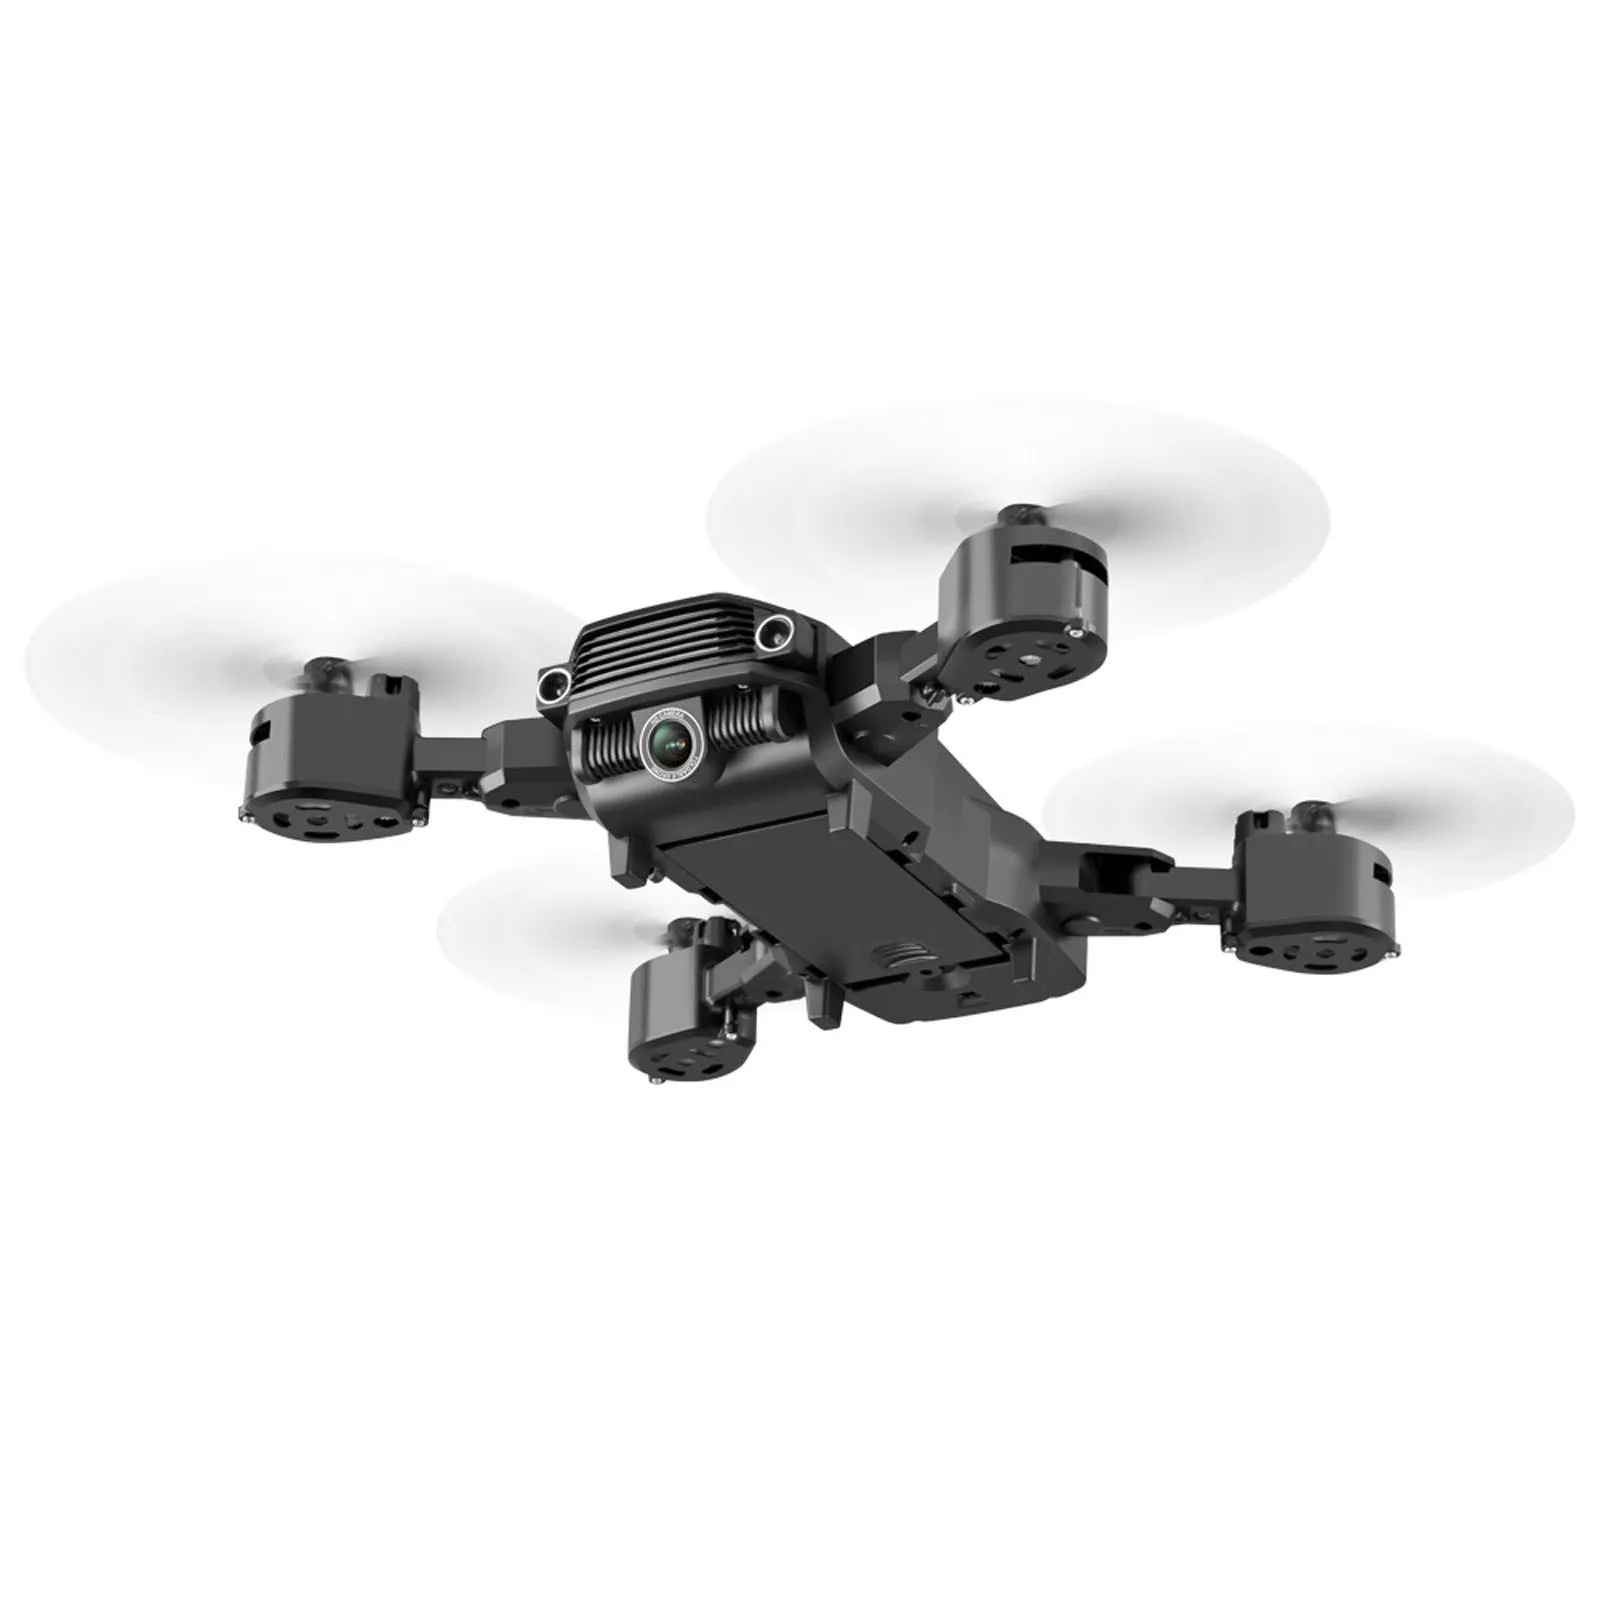 LSRCLS11 Drone 4k HD avion télécommandé à quatre axes à double lentille RC photographie aérienne professionnelle moteur sans balais quadrirotor